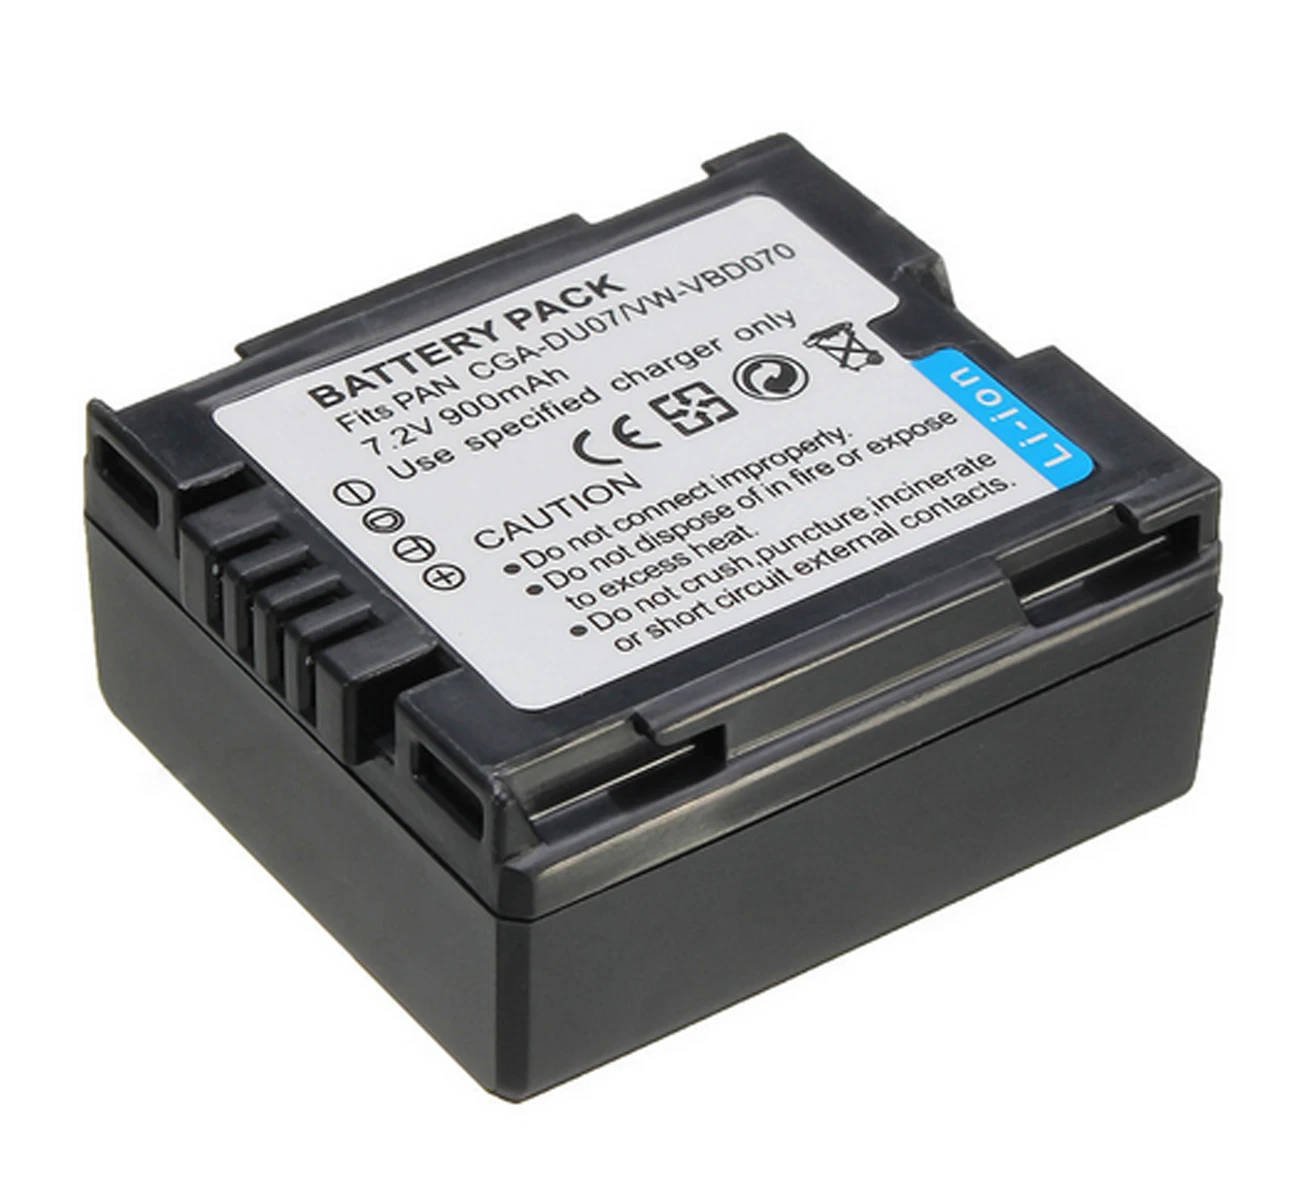 Battery Pack for Panasonic NV-GS120 NV-GS150 NV-GS180 NV-GS200 NV-GS230 NV-GS250 NV-GS280 NV-GS300 NV-GS320 Camcorder | Электроника